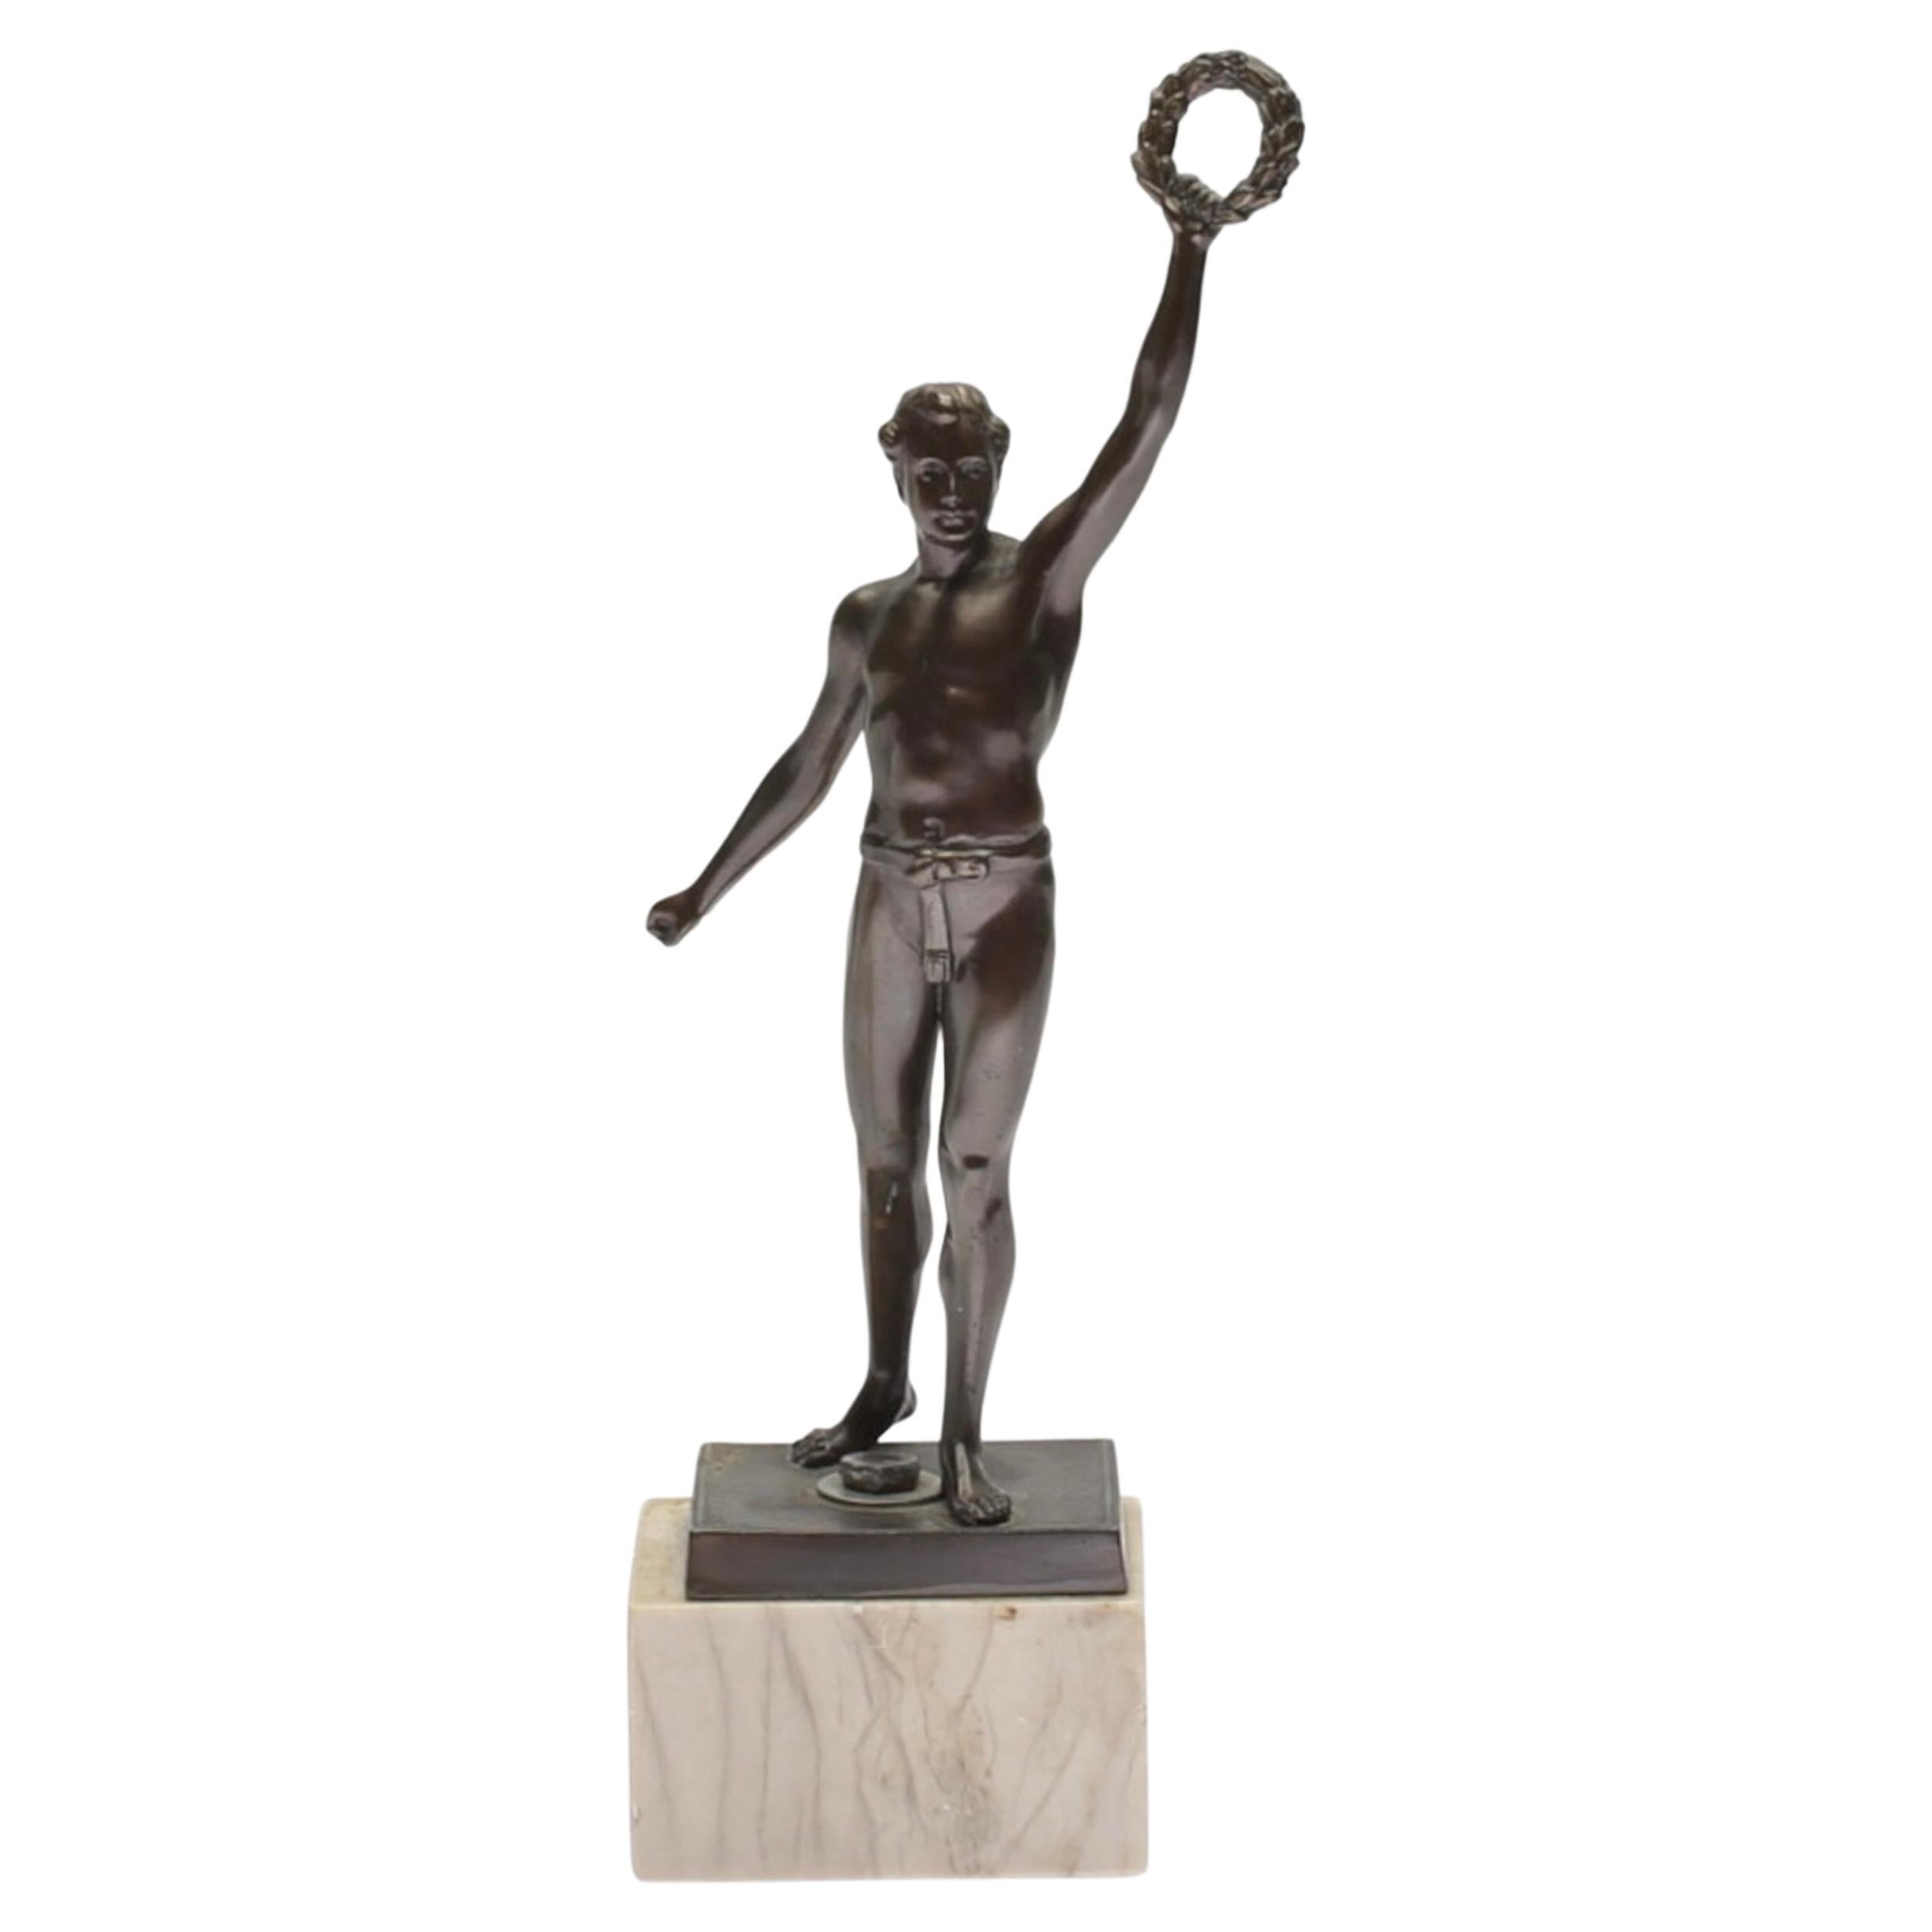 Sculpture en métal patiné du 20e siècle représentant un athlète